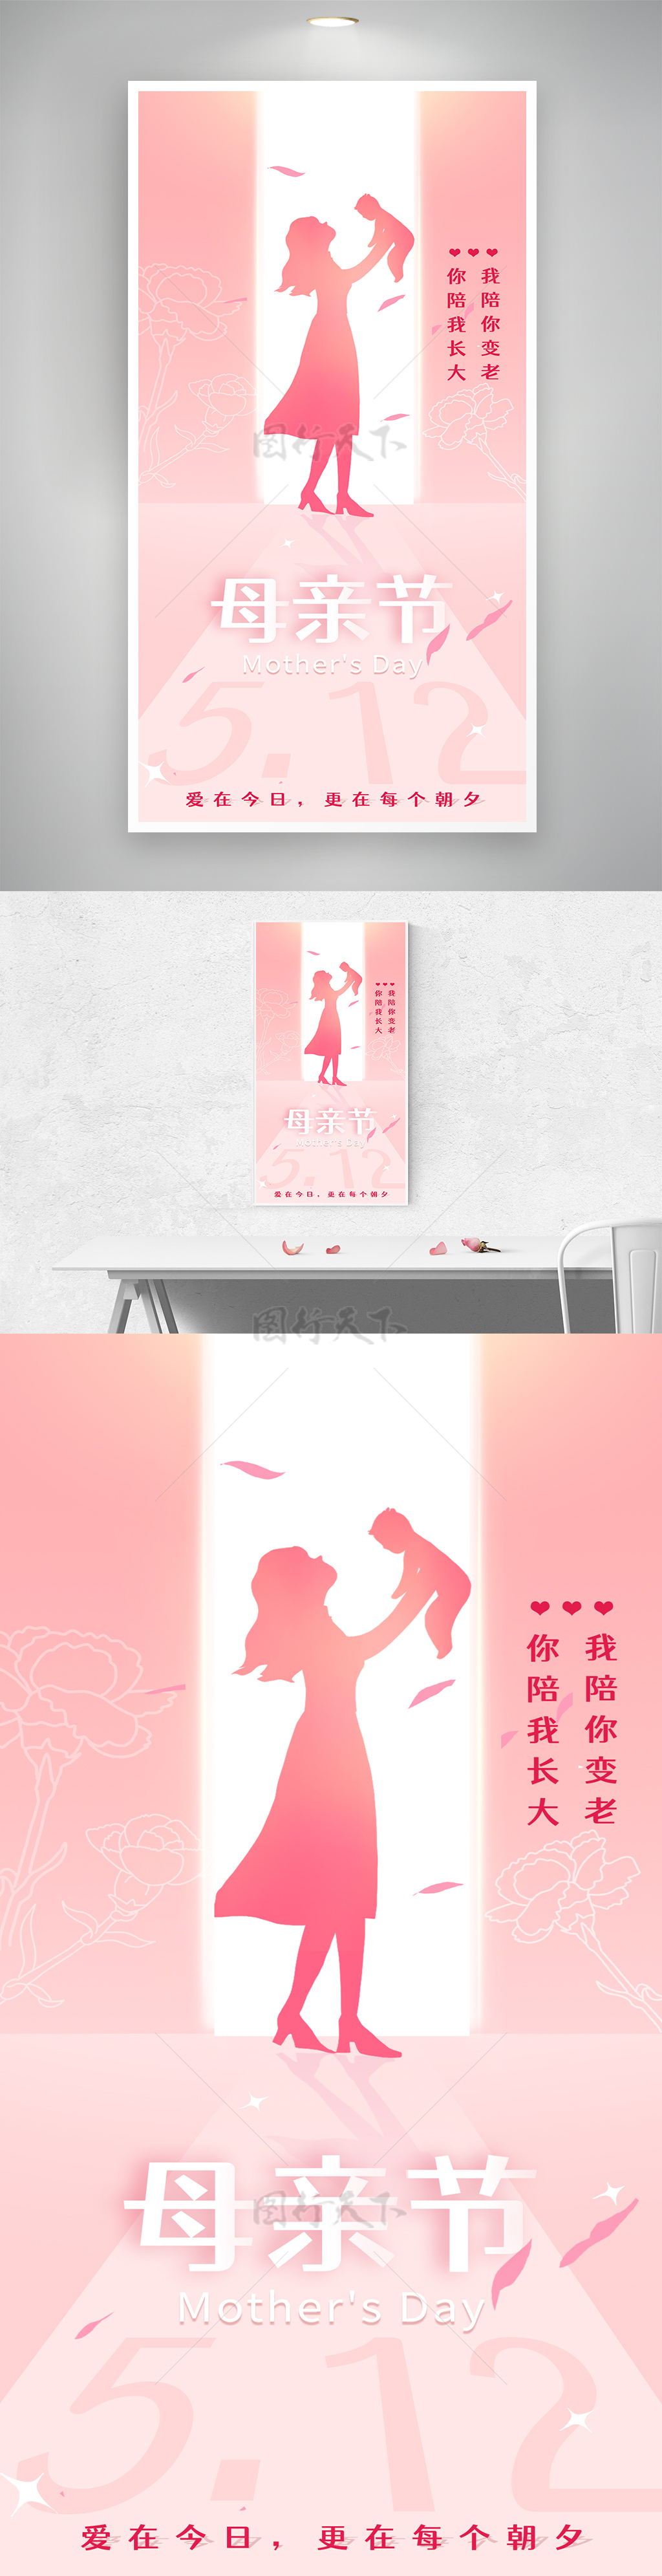 粉色温馨侧影赞美母亲节主题海报